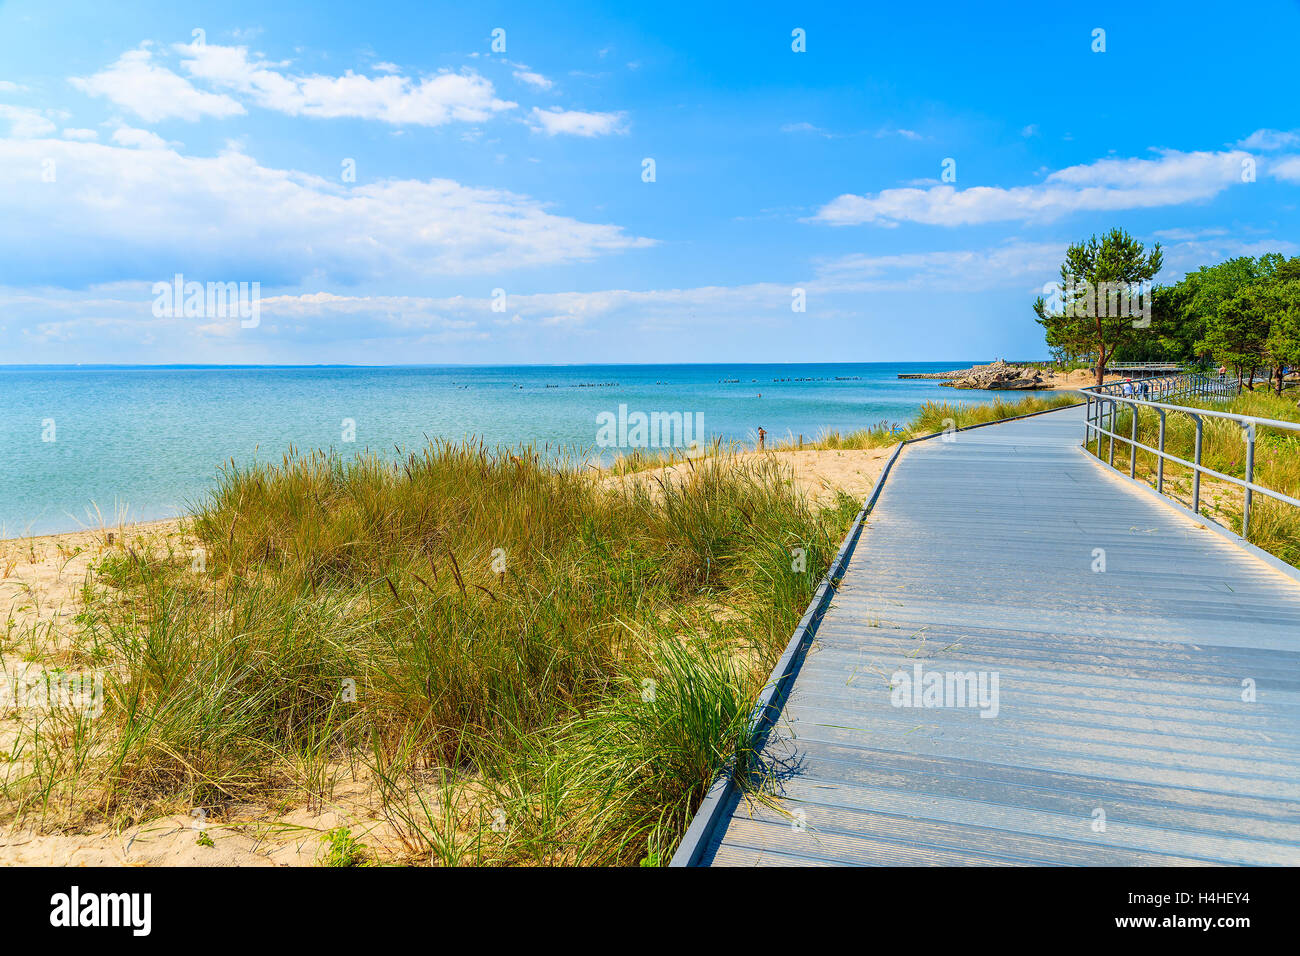 Promenade côtière le long de plage dans la baie Pucka péninsule de Hel, sur la mer Baltique, Pologne Banque D'Images